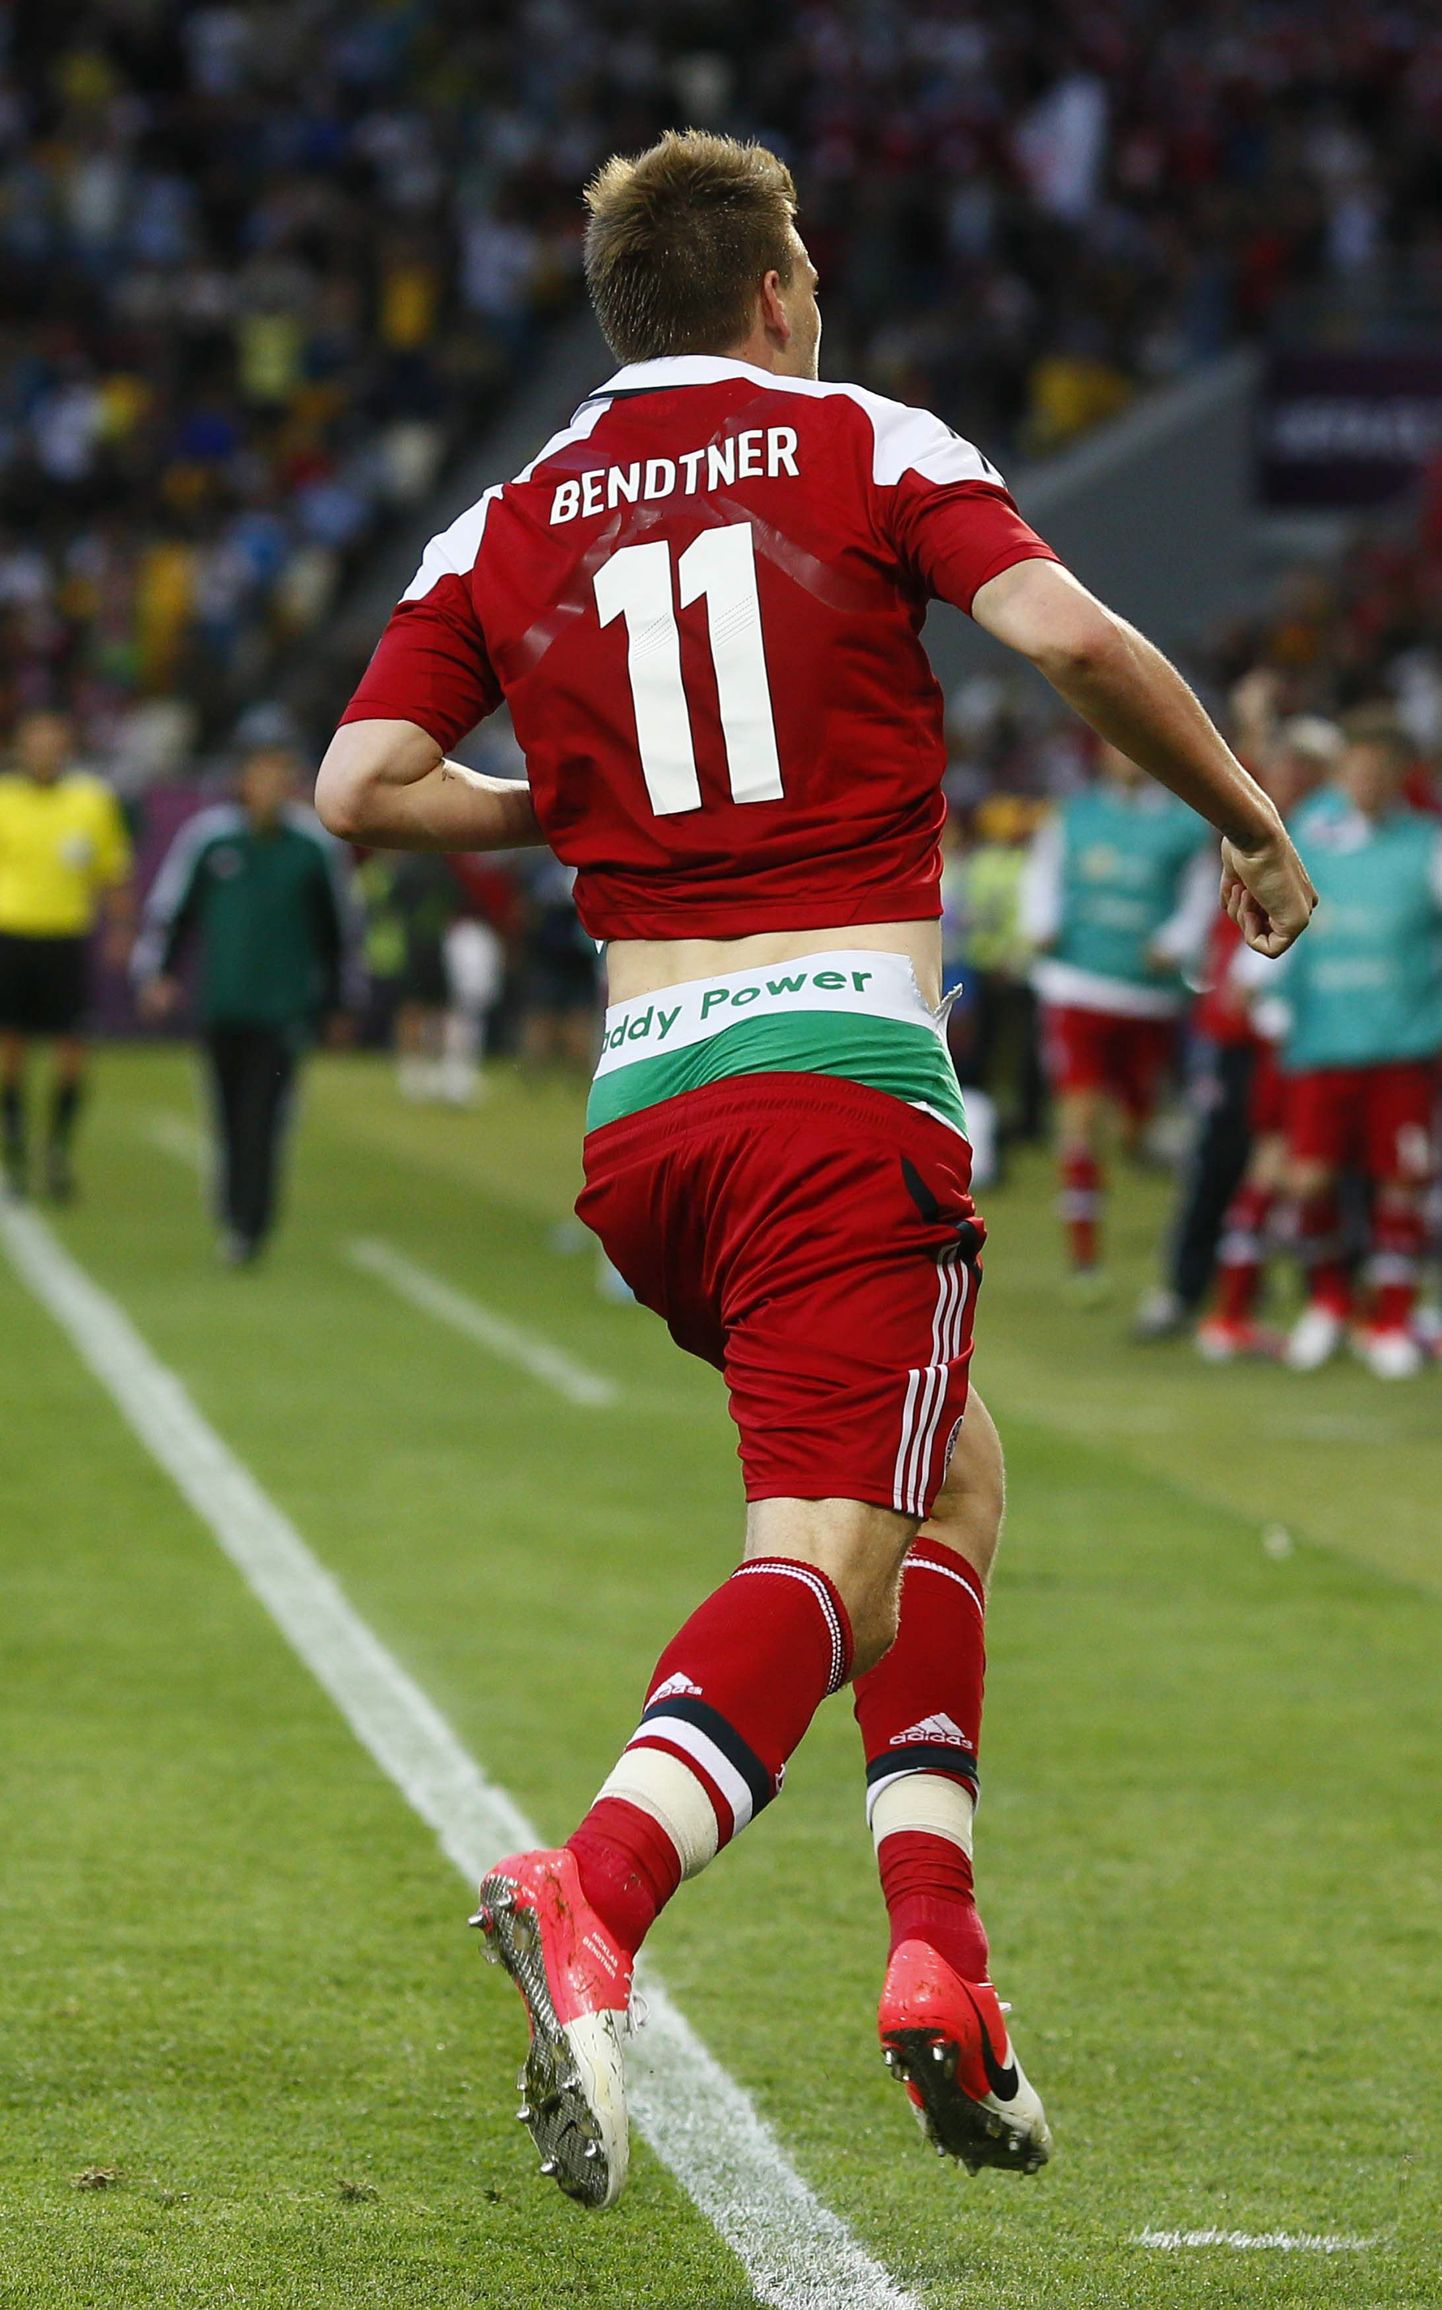 Taani jalgpallikoondislane Nicklas Bendtner saab Euroopa Jalgpalliliidult (UEFA) karistada, kuna paljastas väravat tähistades sponsorlogoga aluspüksid.